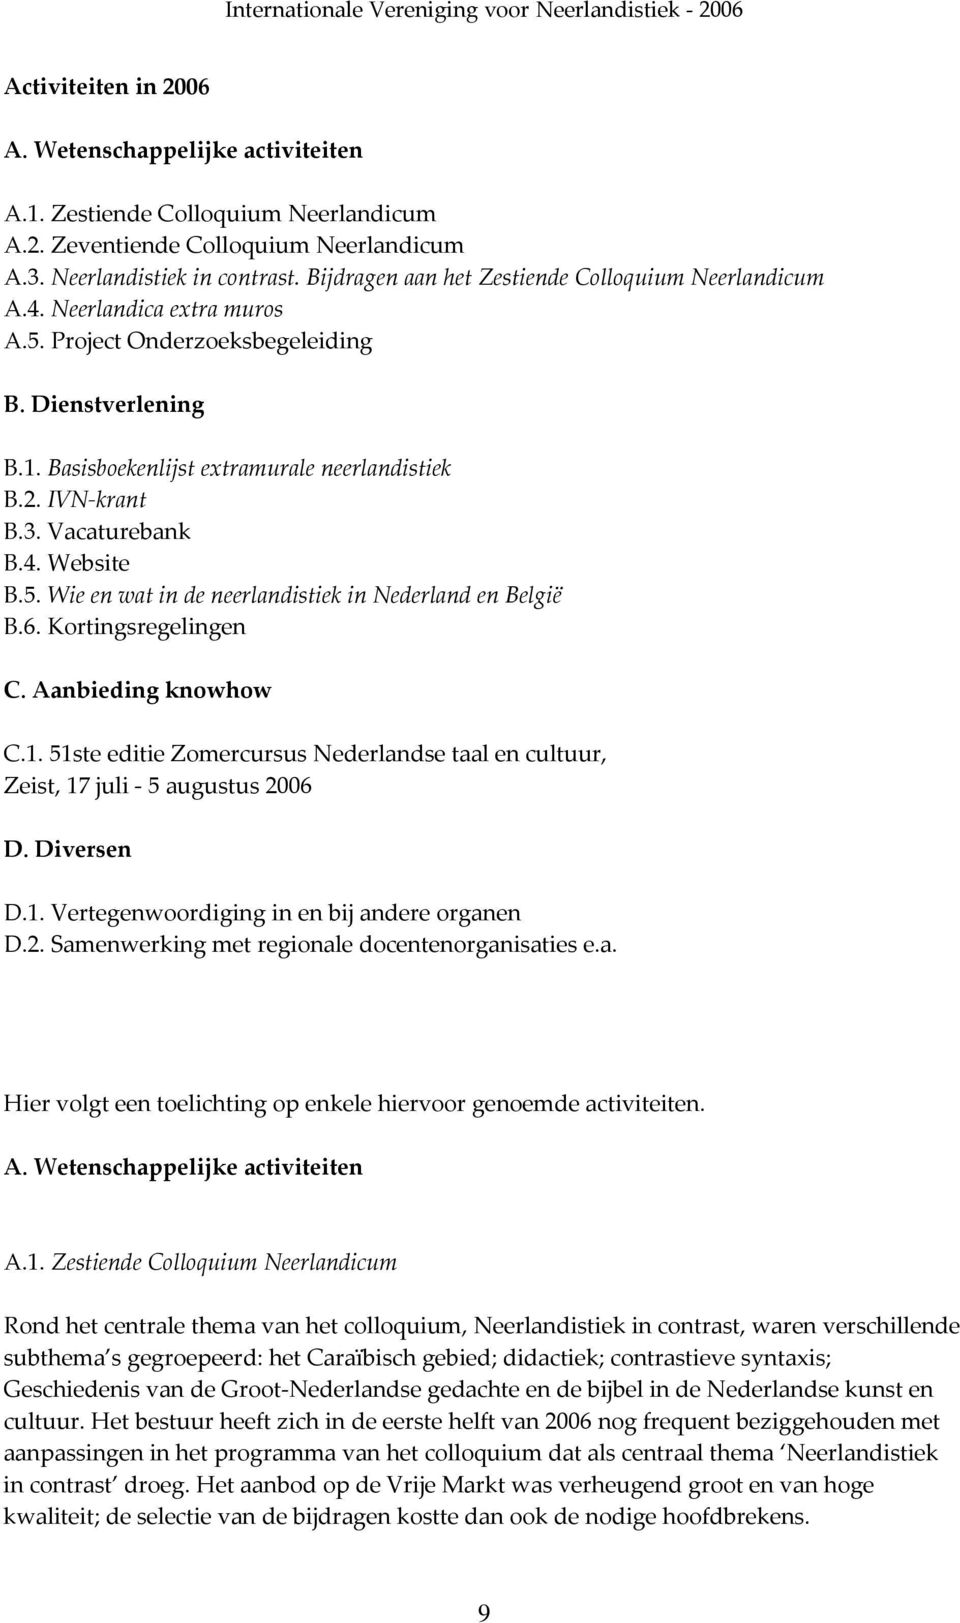 IVN krant B.3. Vacaturebank B.4. Website B.5. Wie en wat in de neerlandistiek in Nederland en België B.6. Kortingsregelingen C. Aanbieding knowhow C.1.